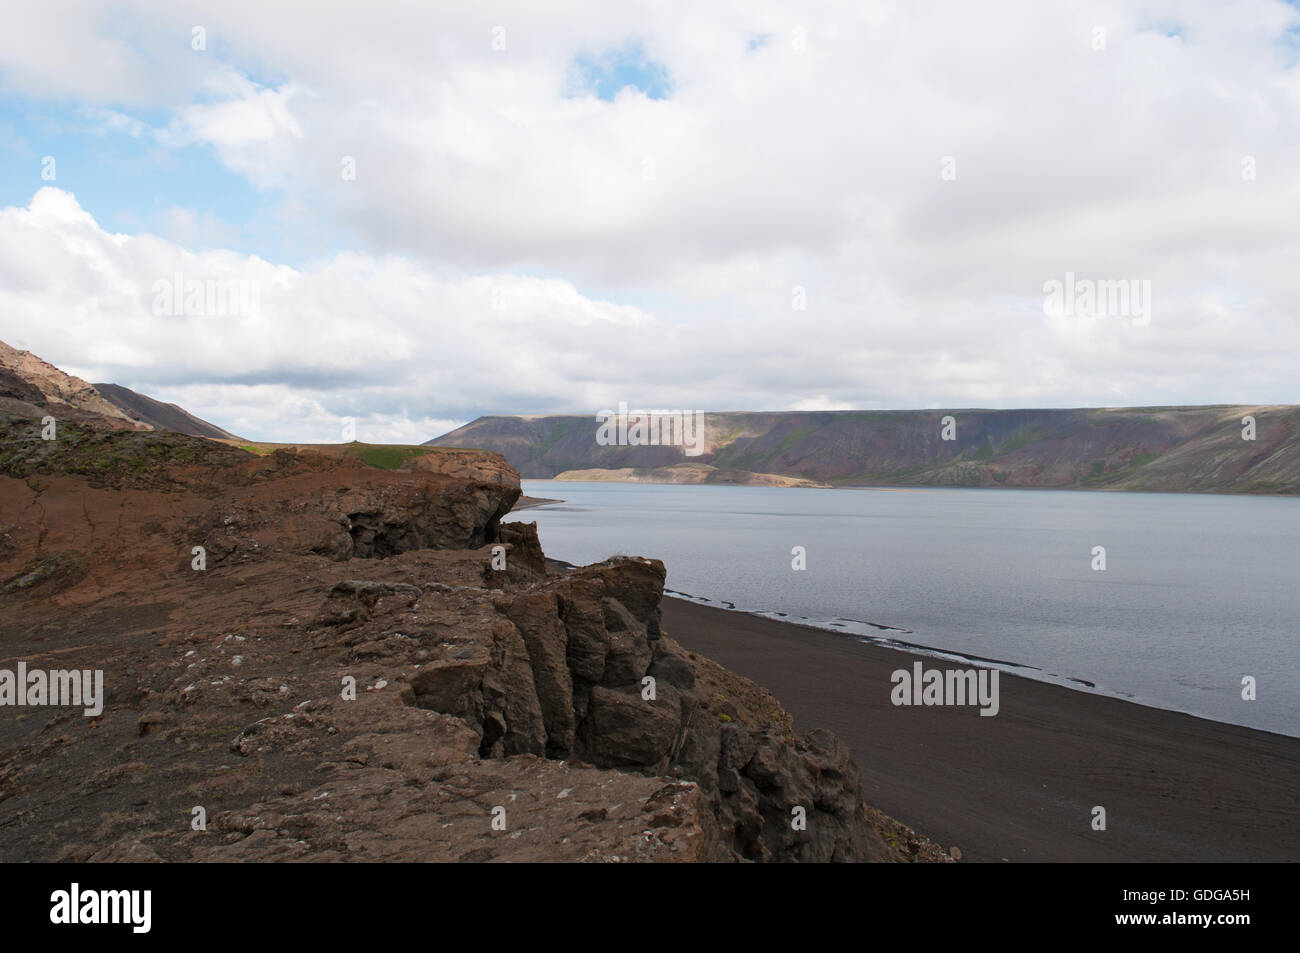 Islande : le sable noir et les roches du lac Kleifarvatn, sur la péninsule de Reykjanes et sur la zone de la fissure de la dorsale médio-Atlantique Banque D'Images